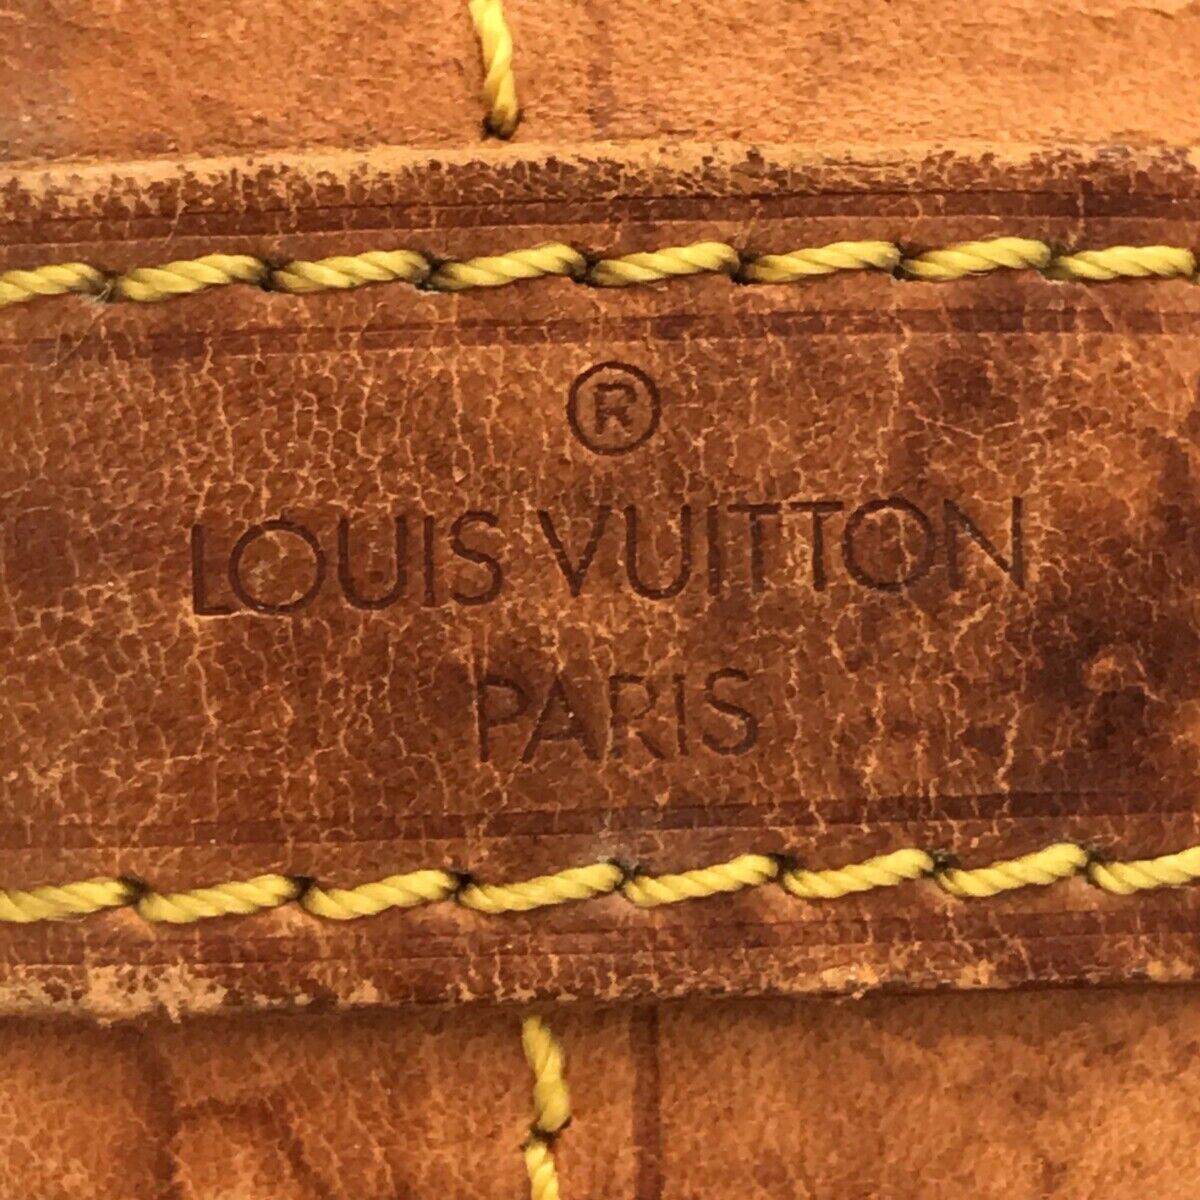 Authentic Vintage Louis Vuitton Noe Shoulder Bag in 2023